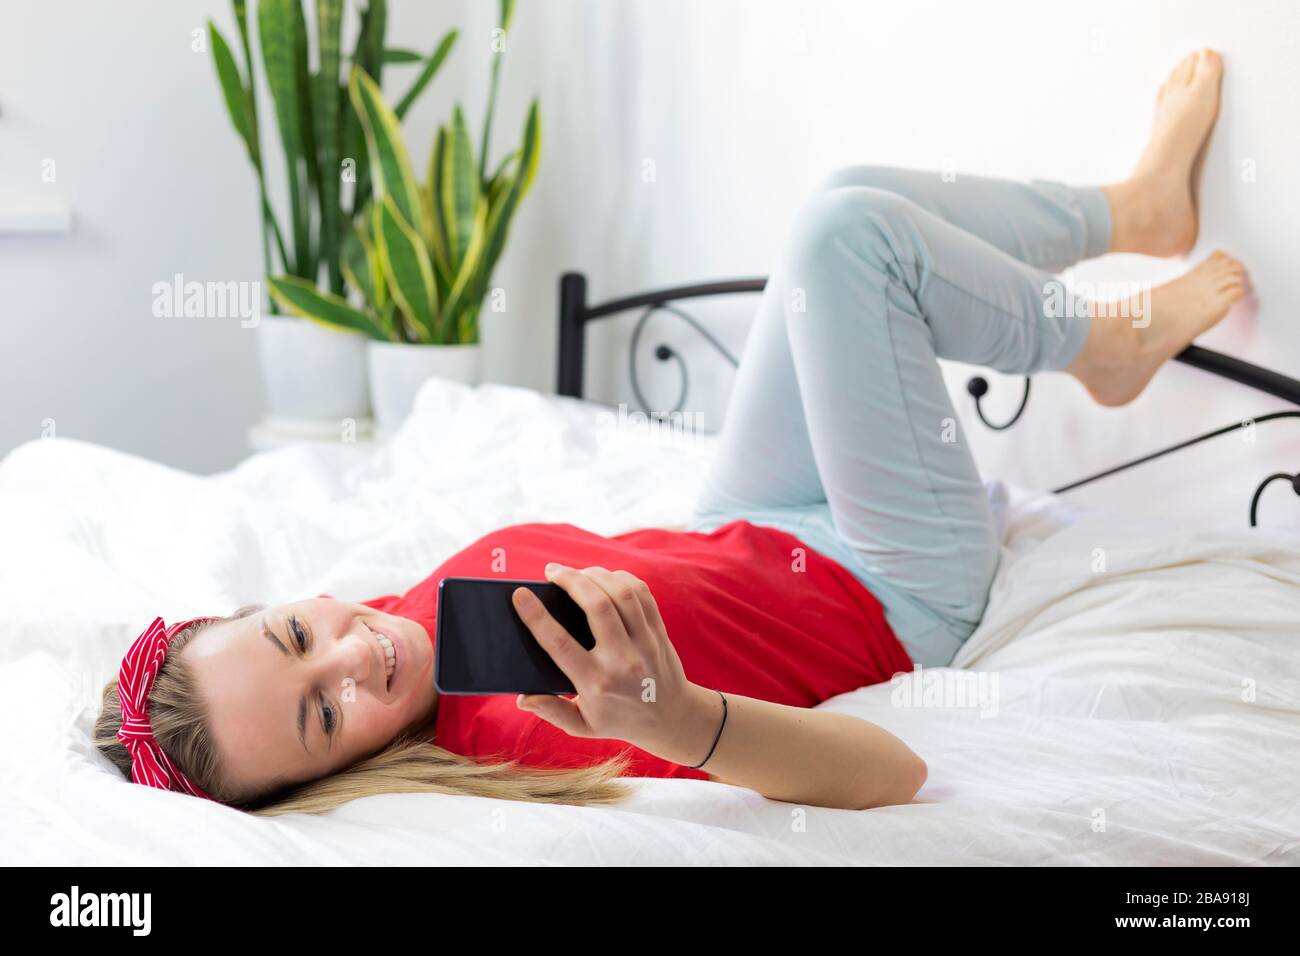 Mujer joven sonriente con pelo rubio en una camiseta roja y pantalones cómodos se encuentra en una cama blanca con un smartphone. Trabaja desde casa, escribe y lee Foto de stock